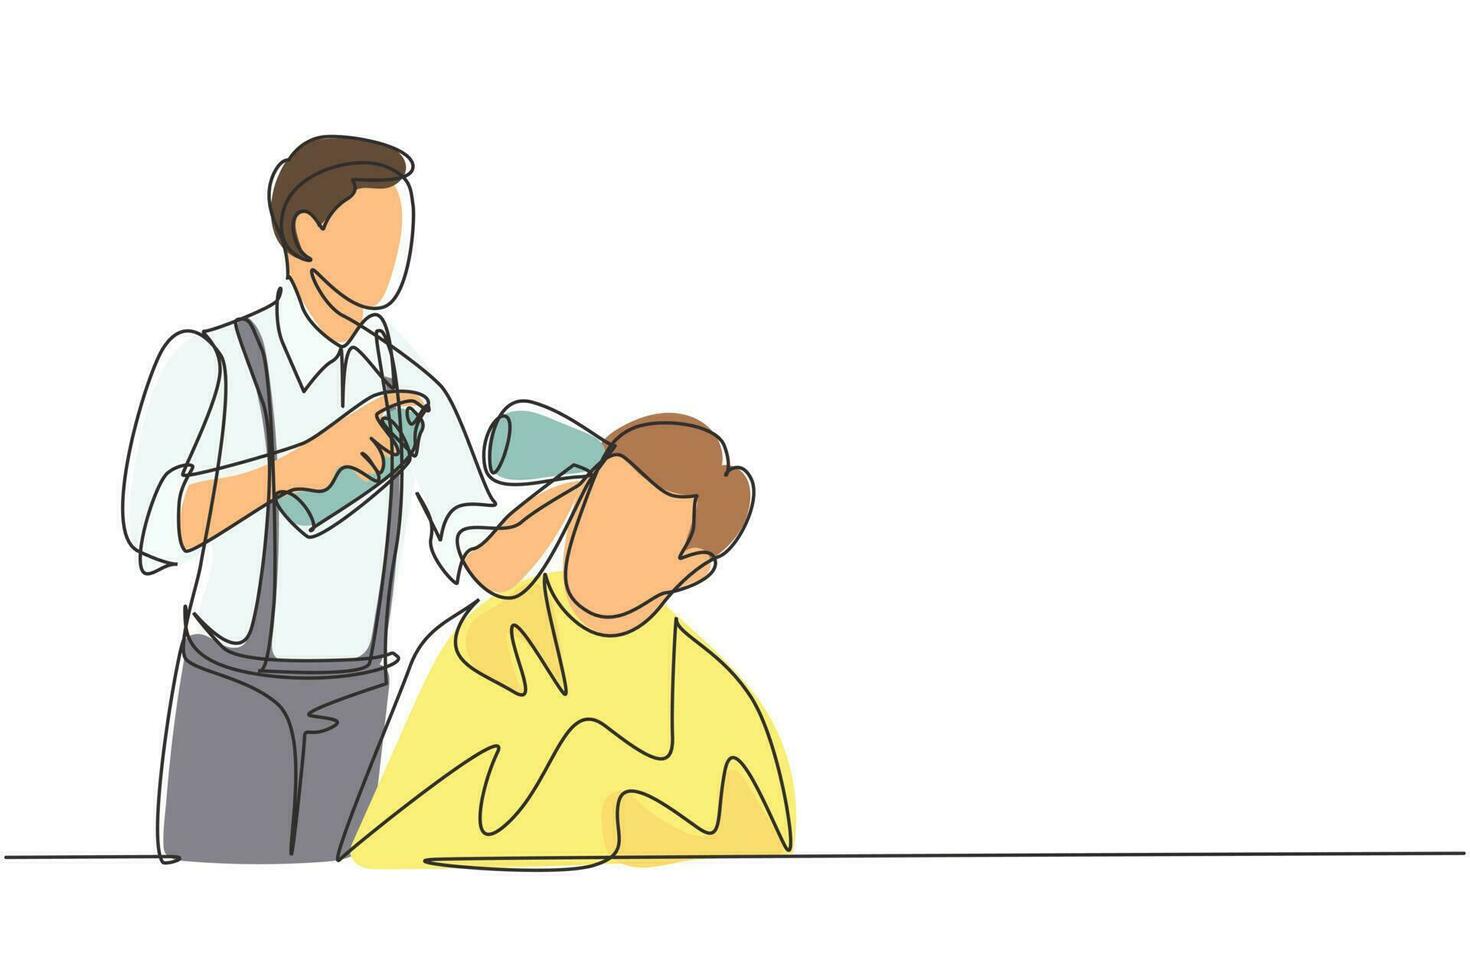 enda kontinuerlig linjeteckning frisör gör hårstyling med hårspray efter klippning på frisörsalongen. ung stilig man får frisyr i modern frisörsalong. dynamisk en rad ritning grafisk design vektor